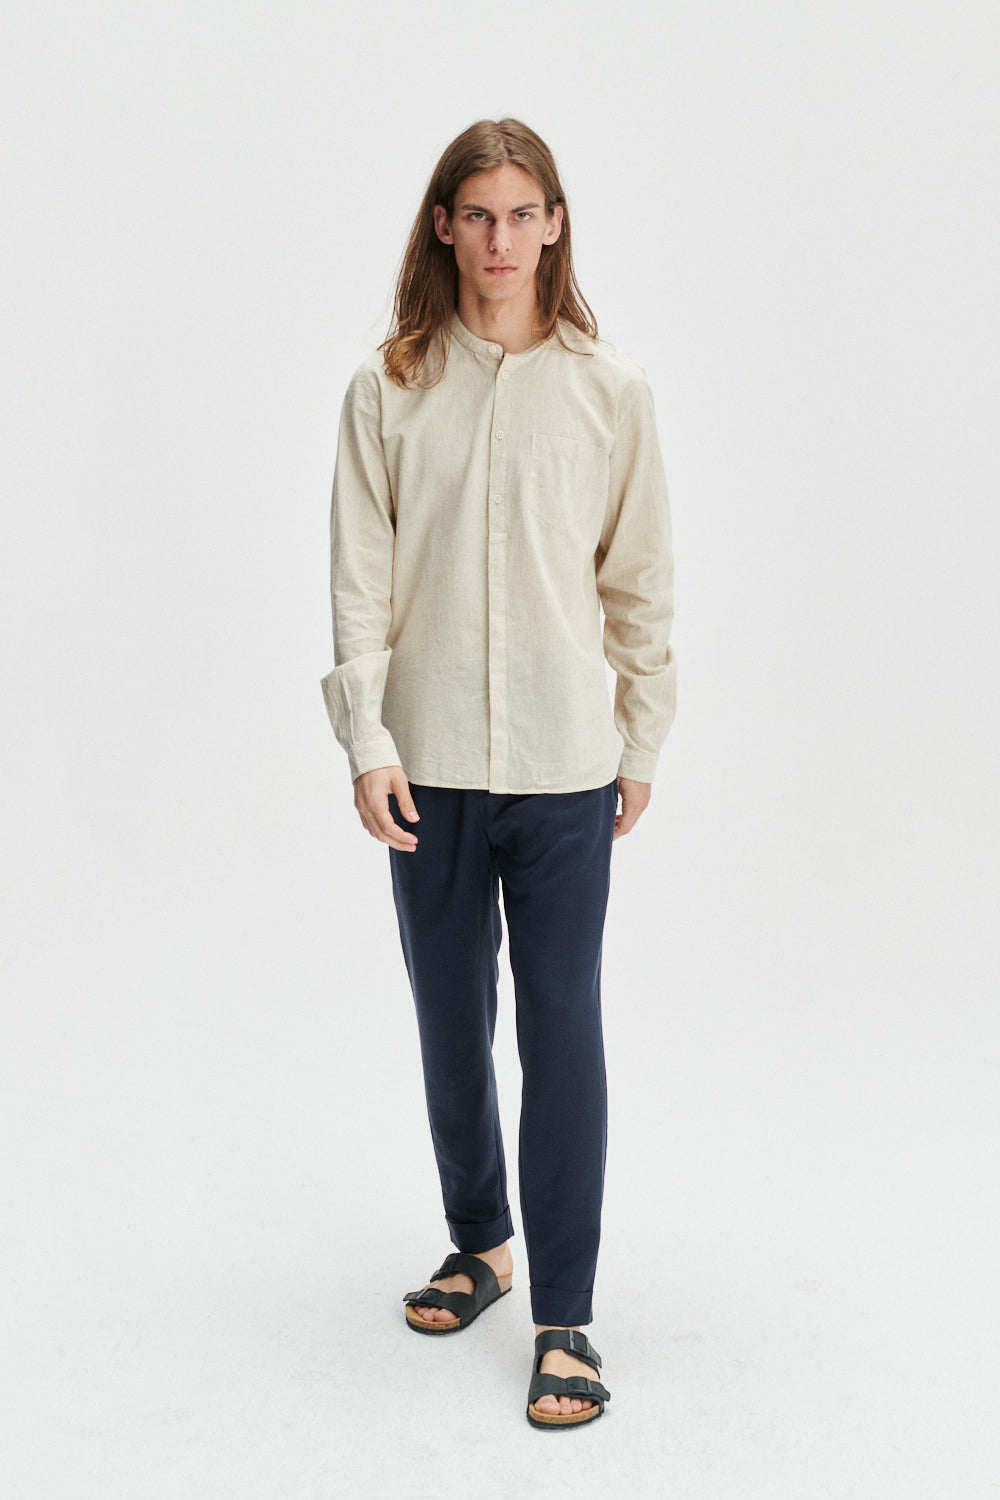 Zen Shirt in a Beige Japanese Organic Cotton and Linen